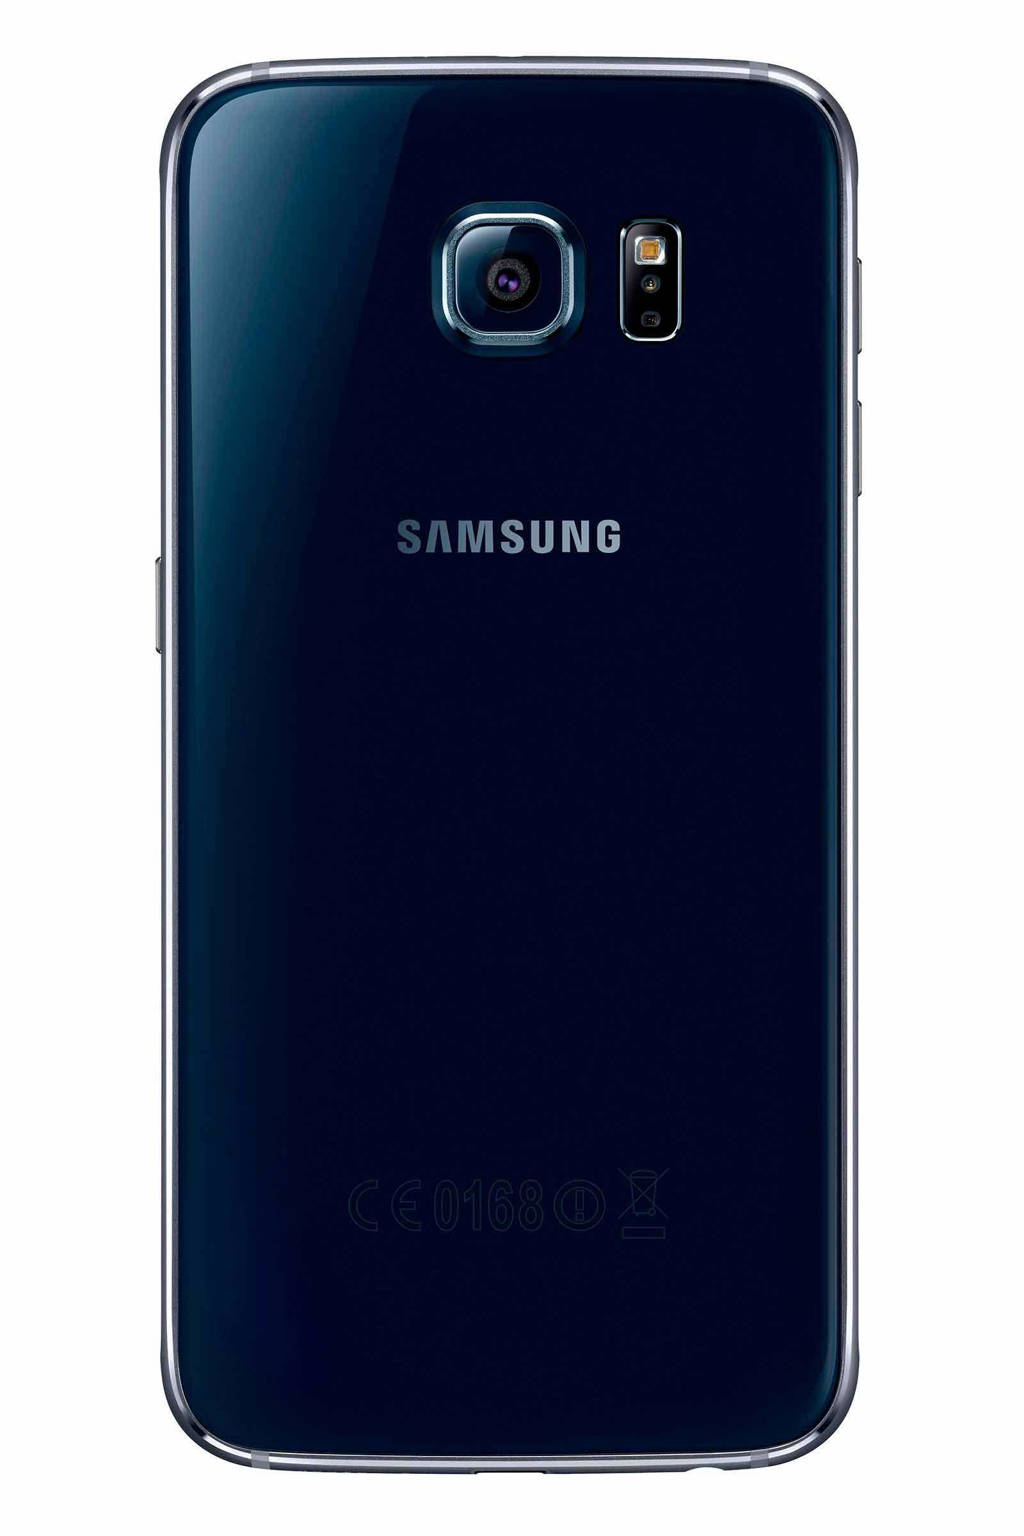 Kust van ik ben trots Samsung Galaxy S6 64GB zwart | wehkamp